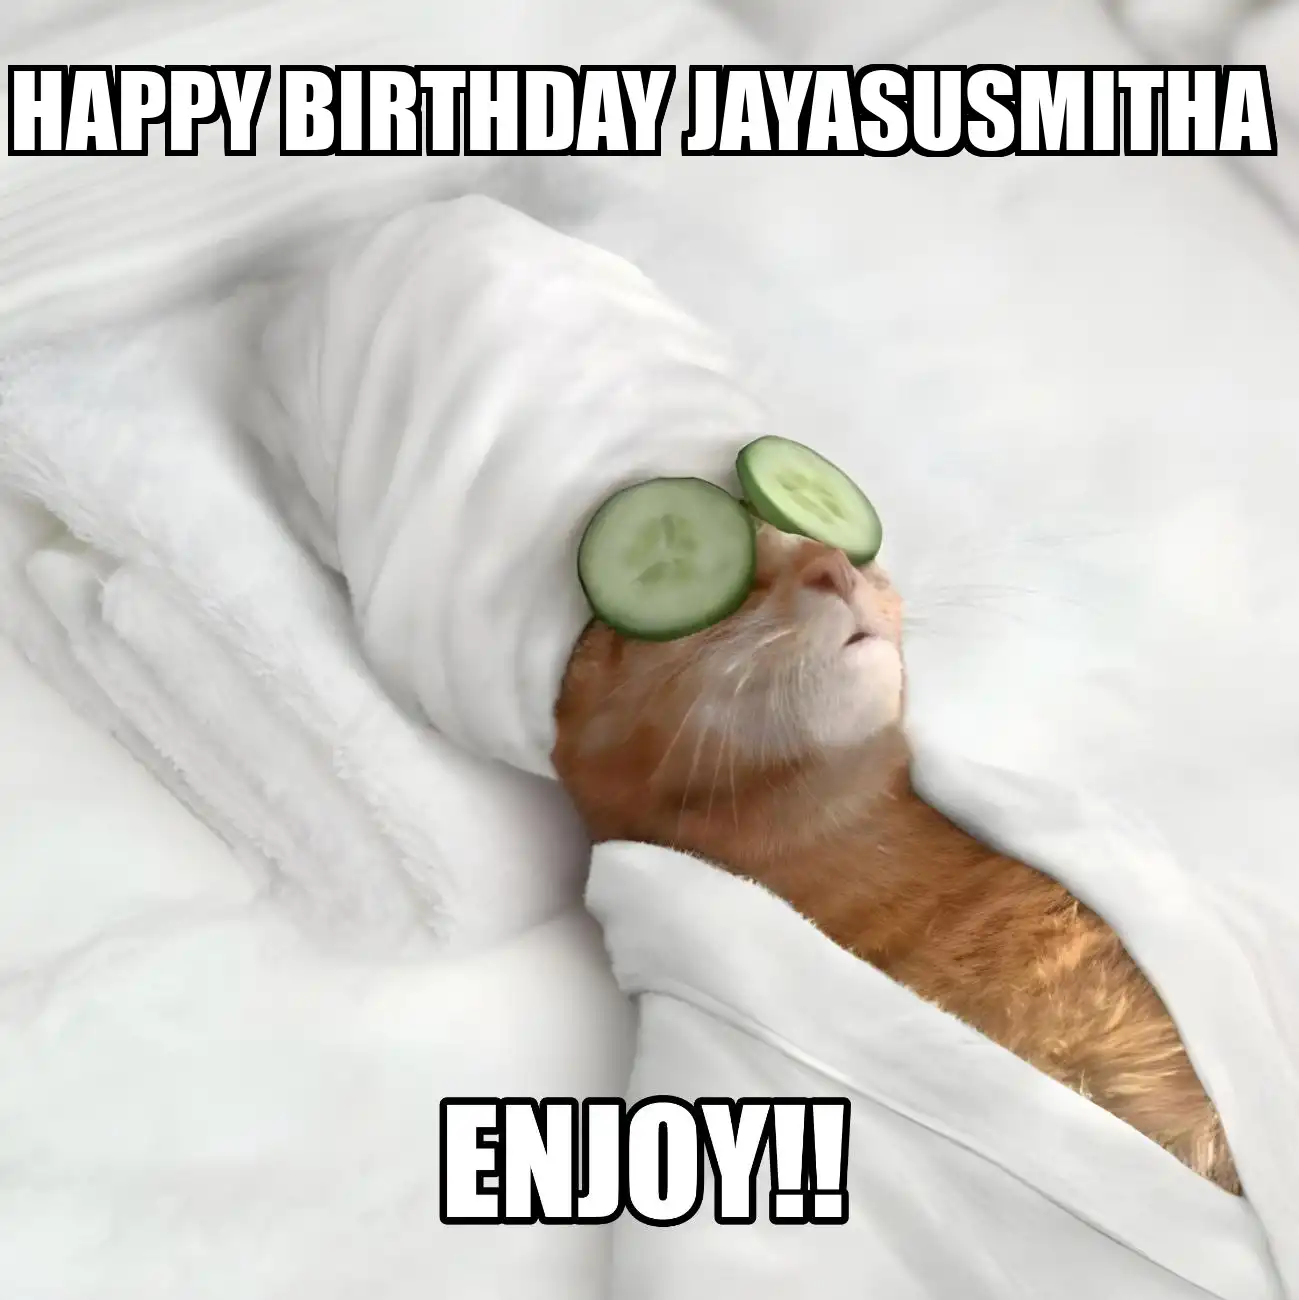 Happy Birthday Jayasusmitha Enjoy Cat Meme